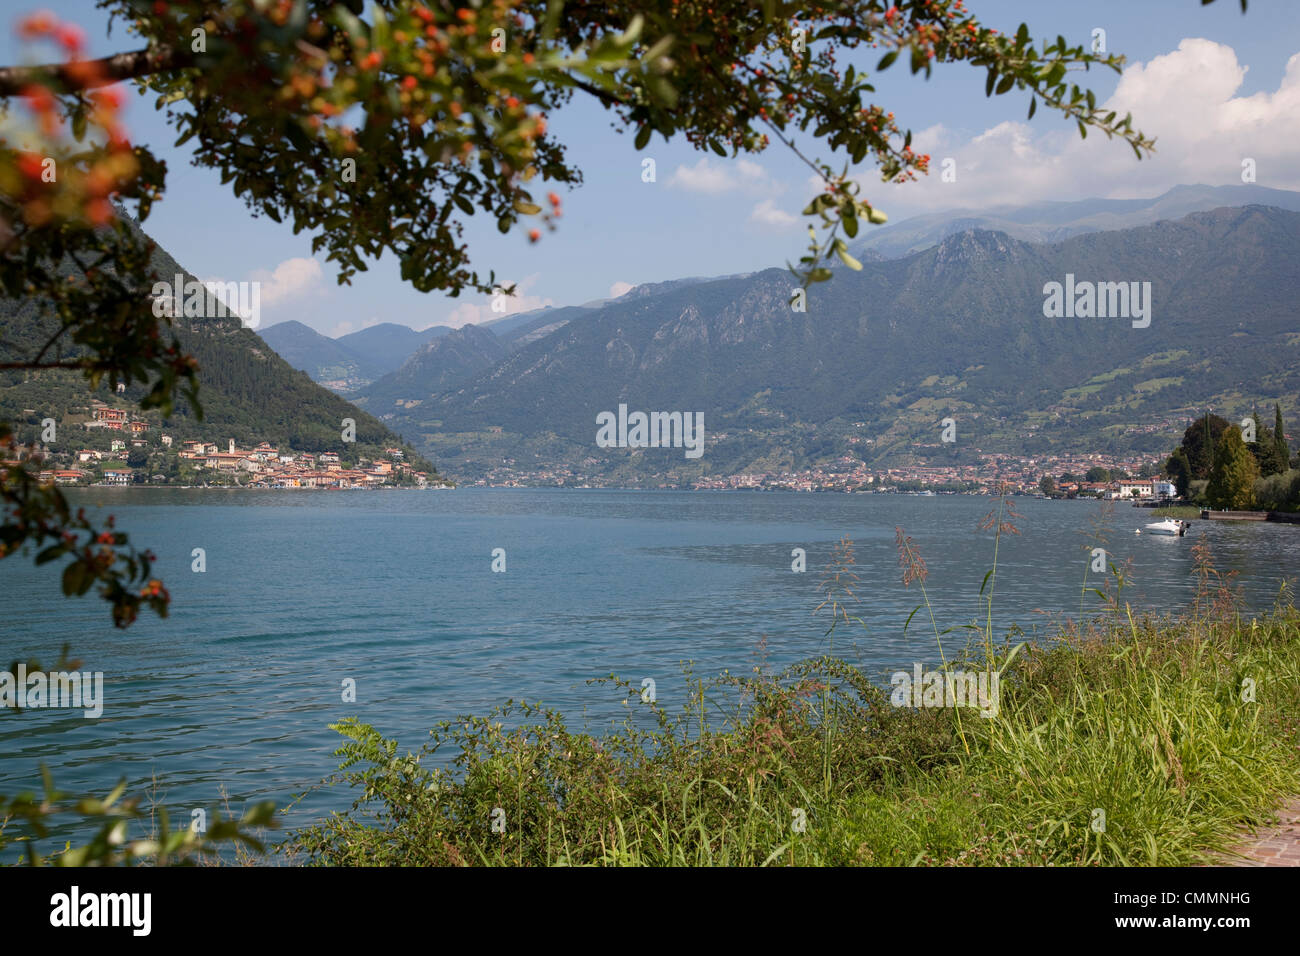 Am See in der Nähe von Sulzano, Lago d ' Iseo, Lombardei, italienische Seen, Italien, Europa Stockfoto